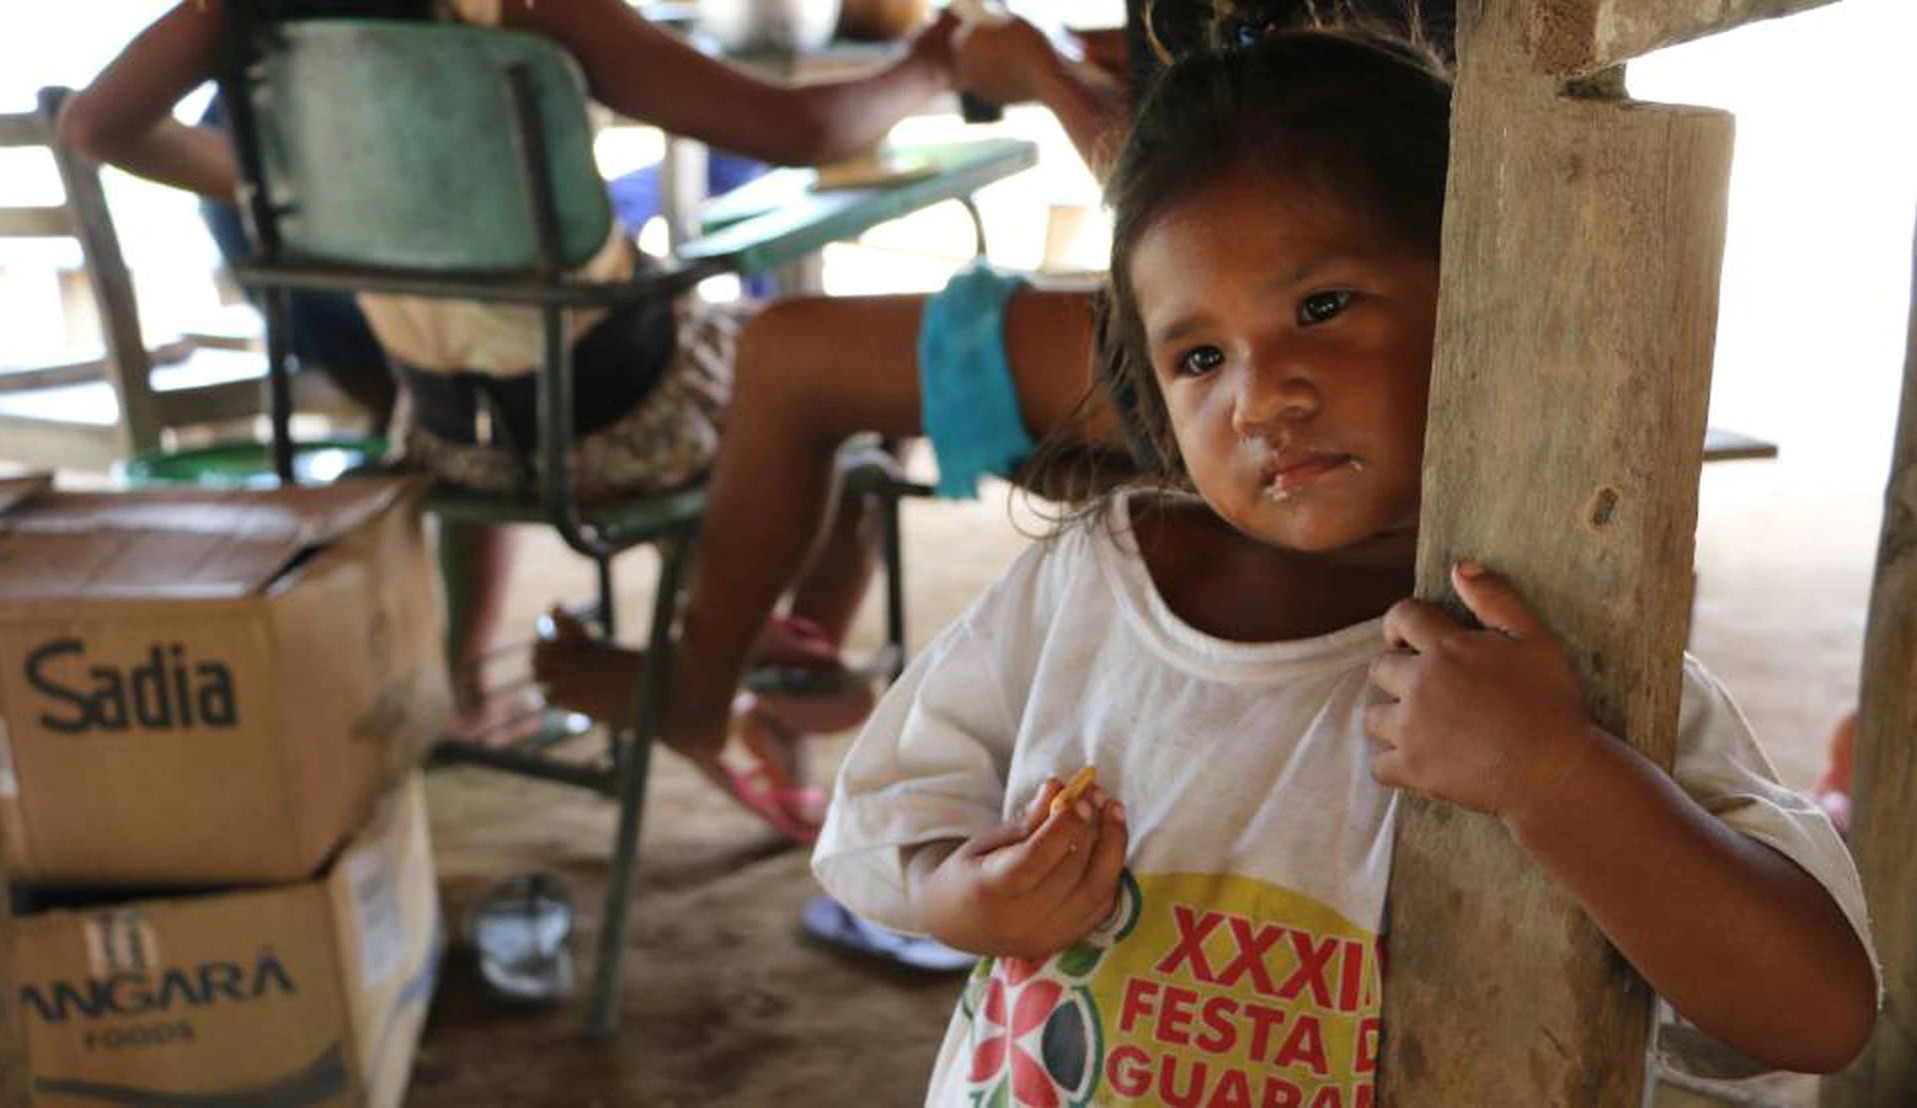 Desmatamento aumenta anemia de crianças na Amazônia